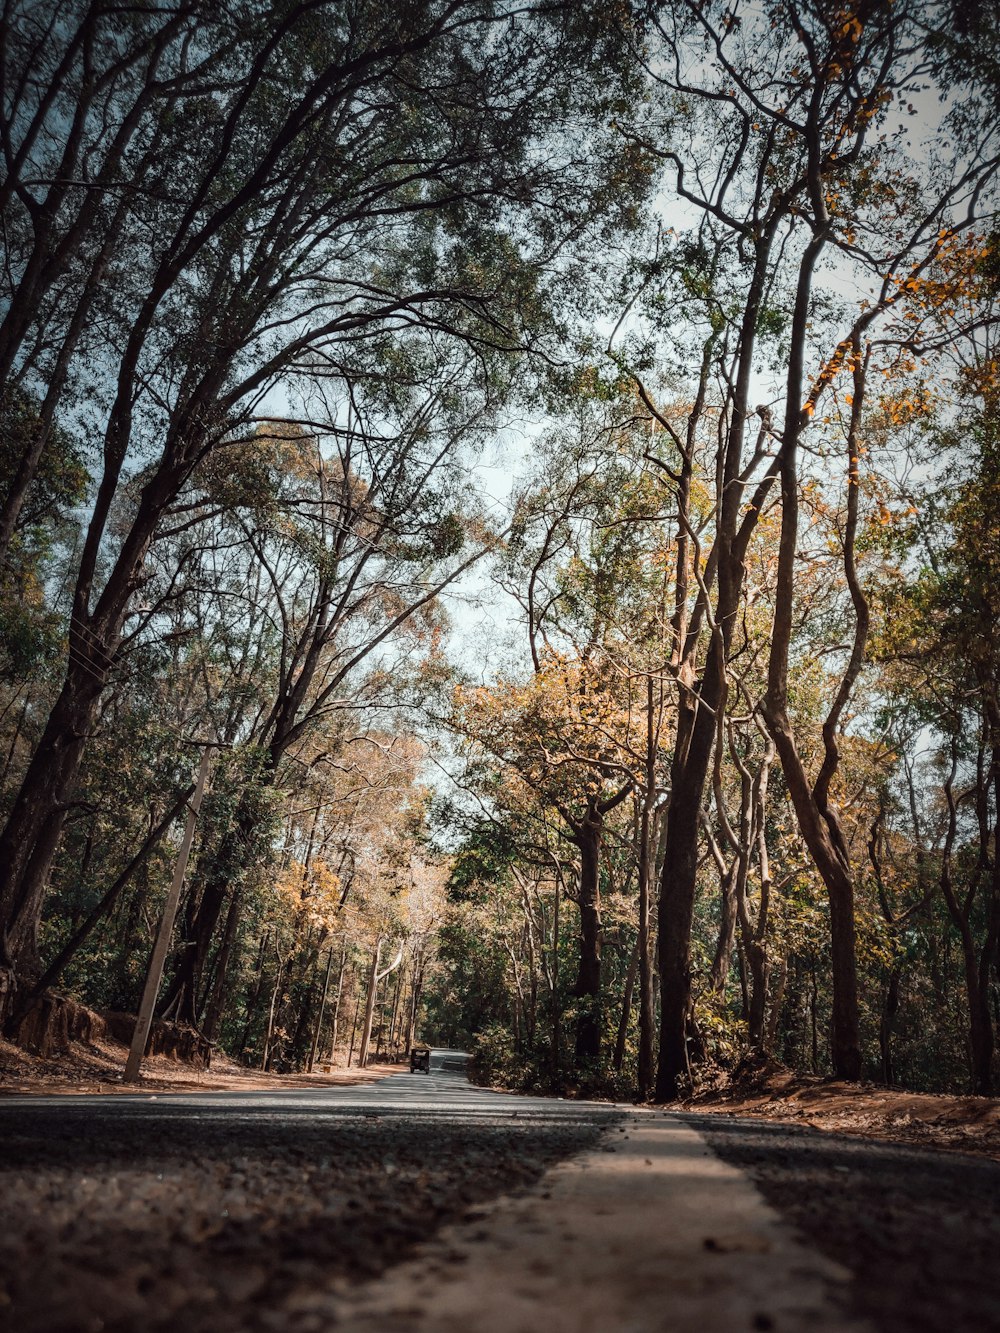 trees near road